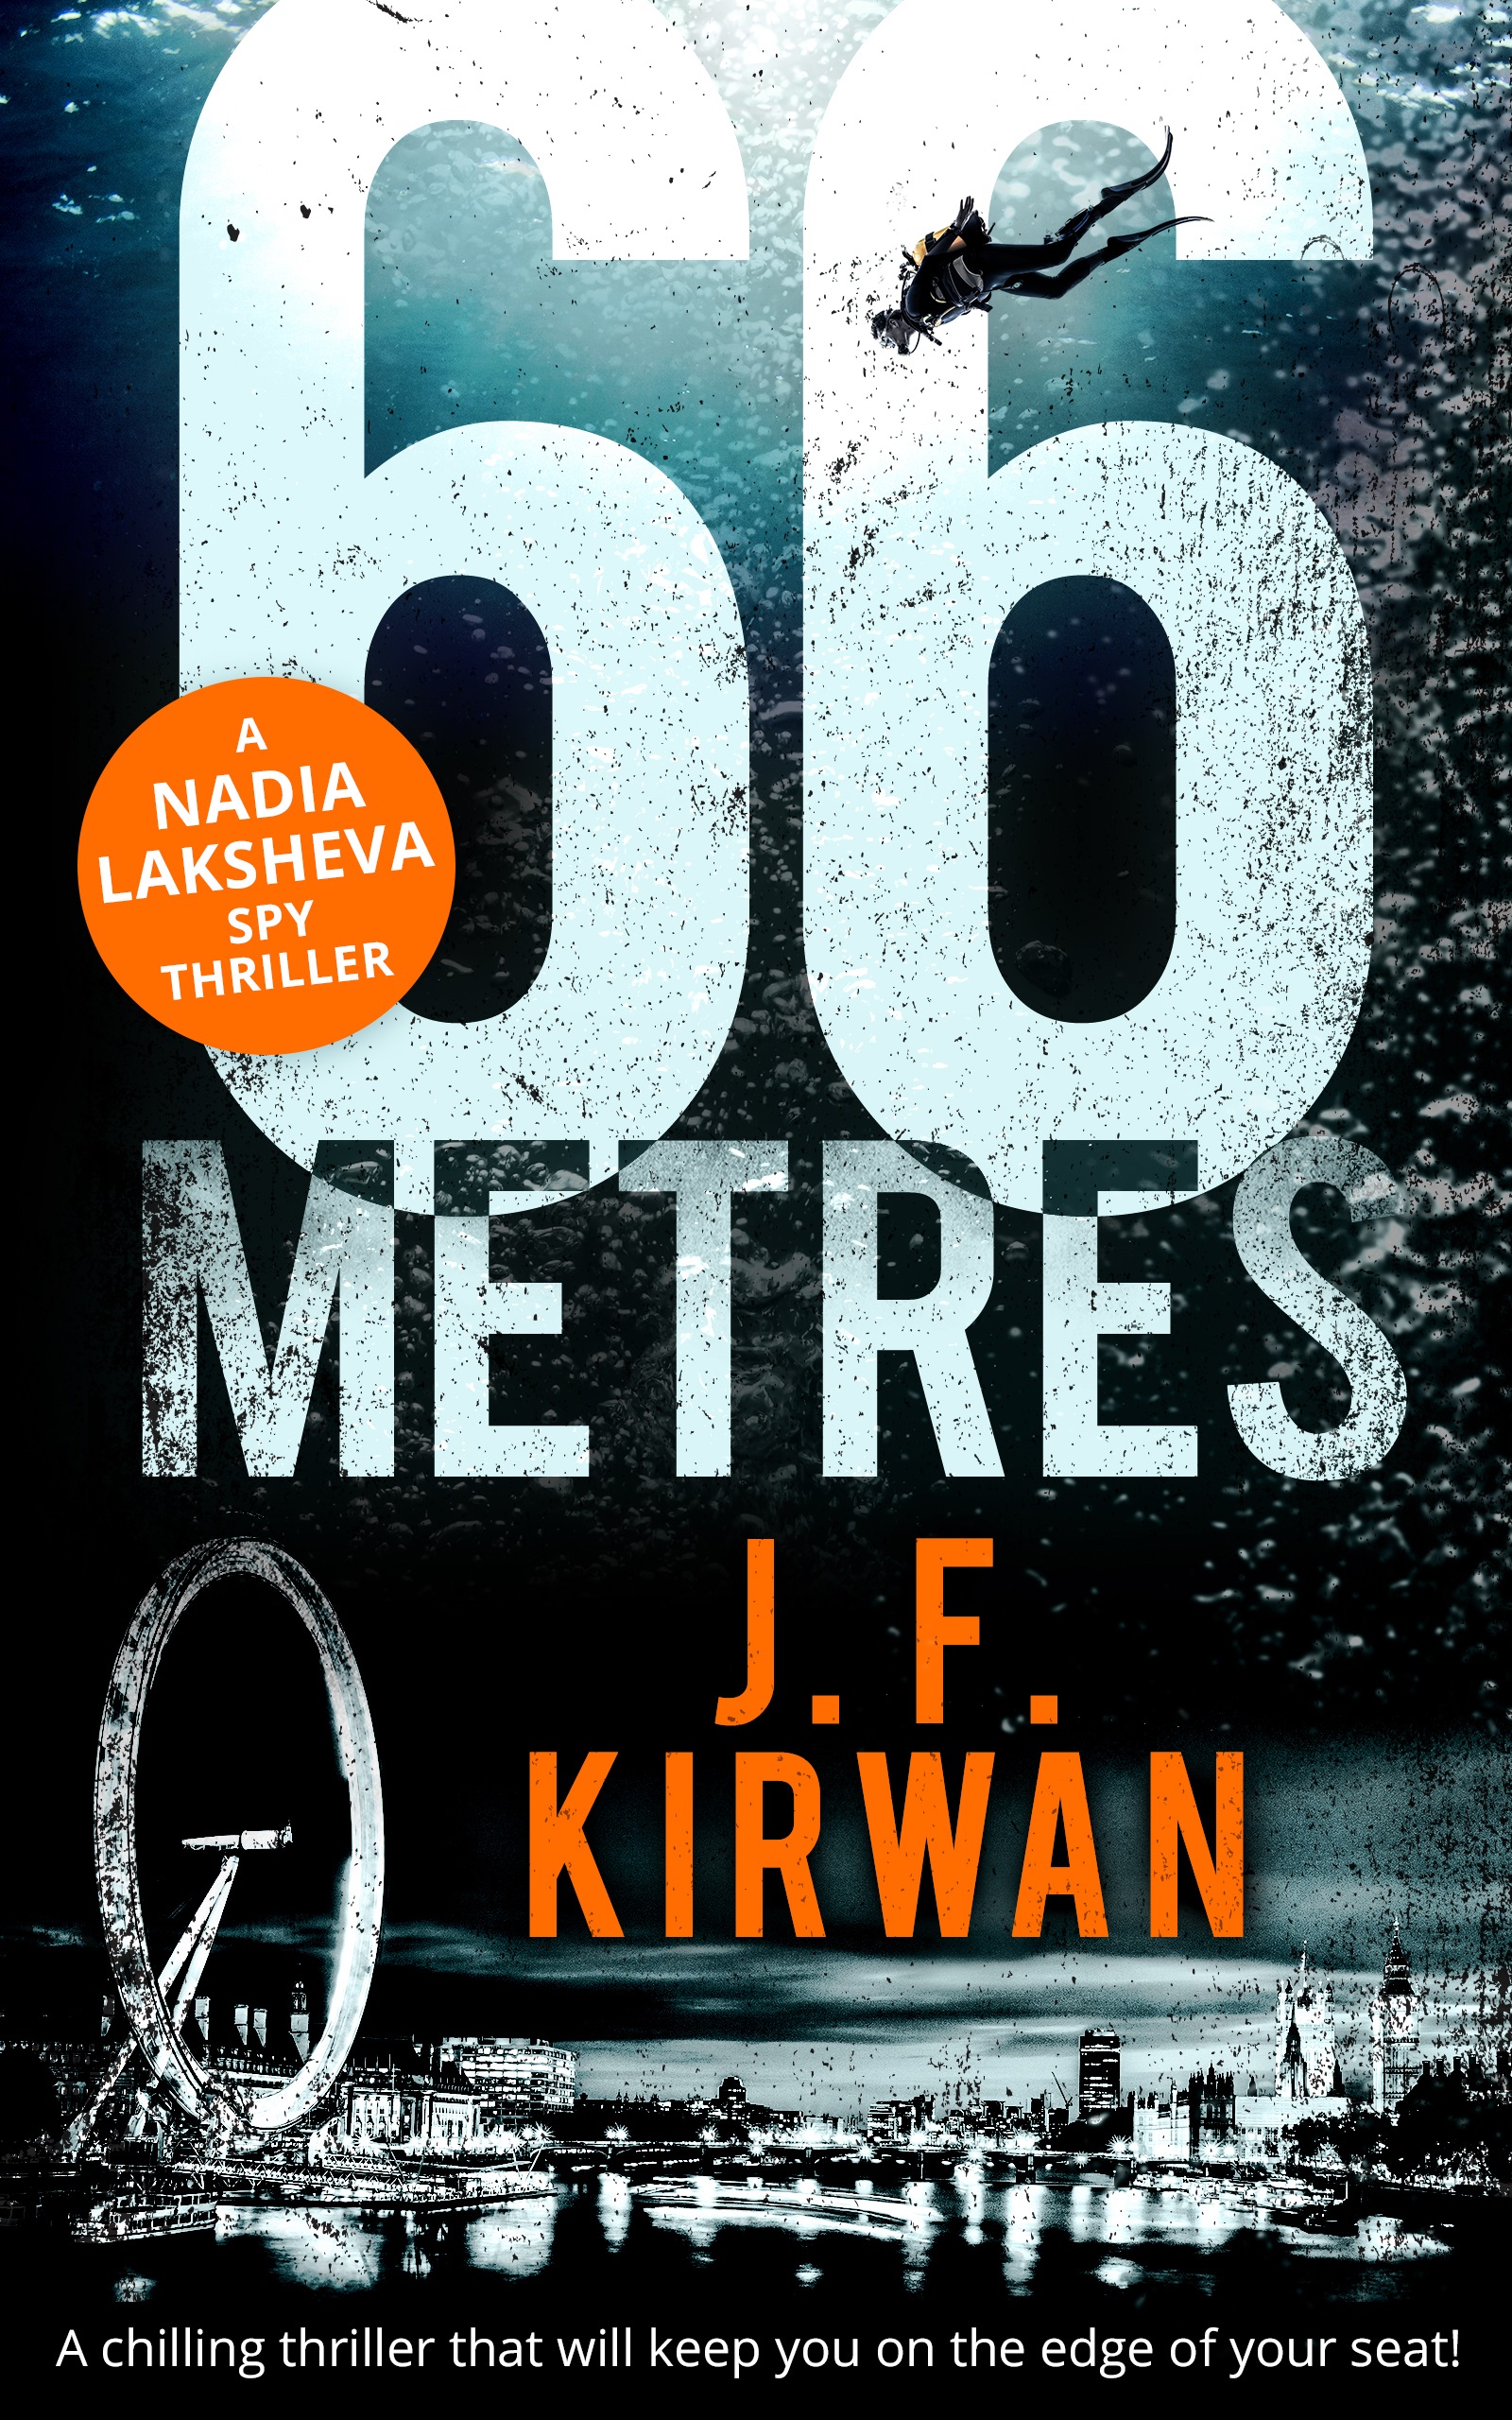 66 Metres by J F Kirwan